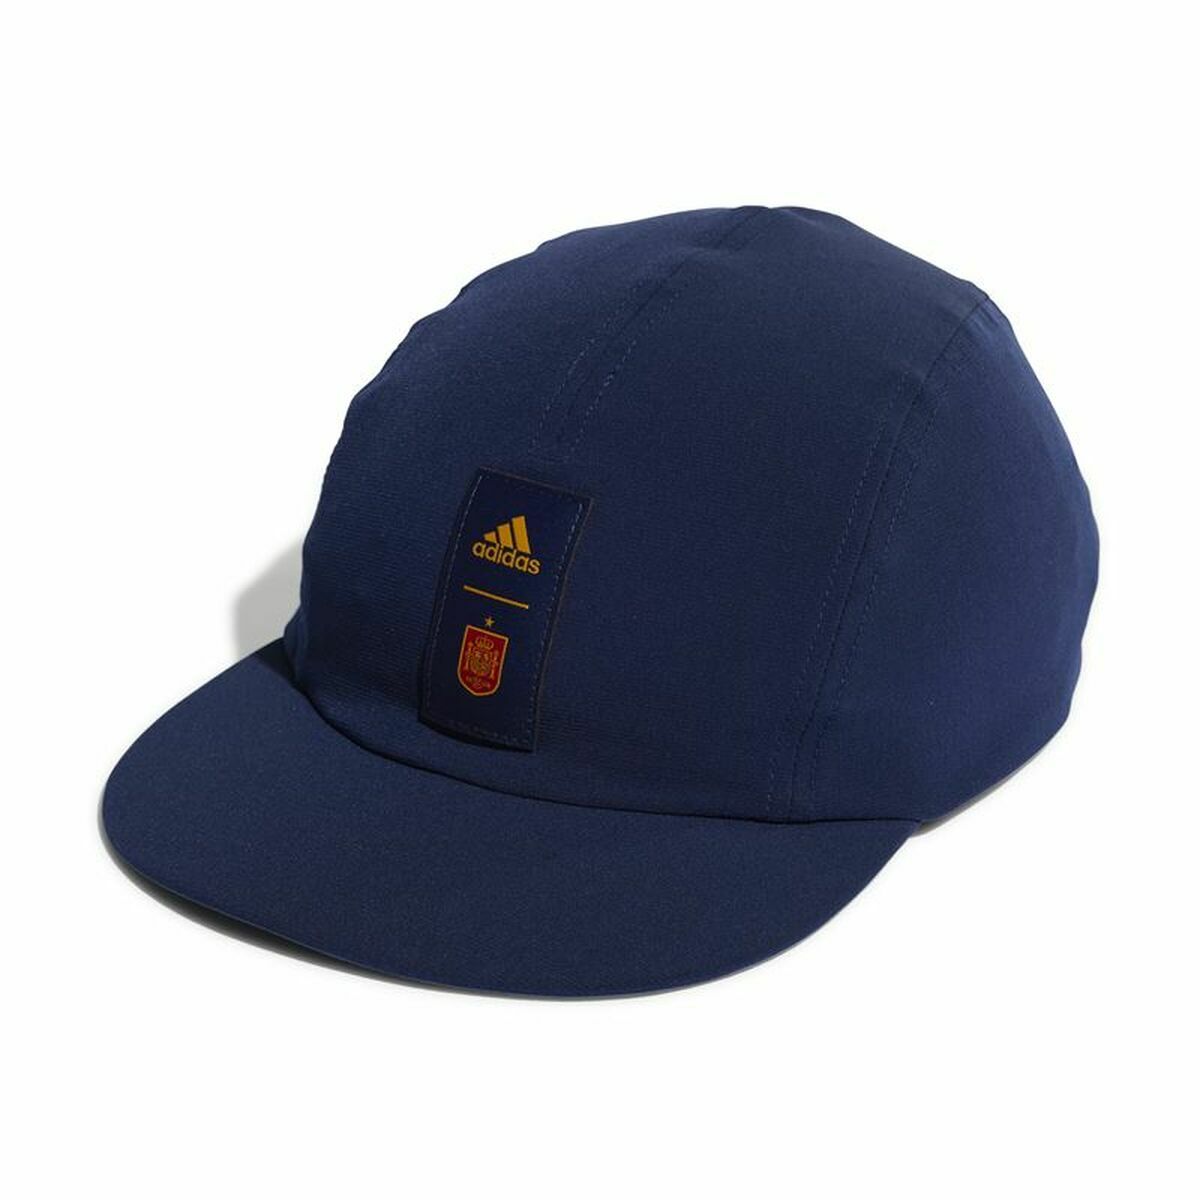 Osta tuote Unisex hattu Adidas España Sininen (Koko: M/L) verkkokaupastamme Korhone: Urheilu & Vapaa-aika 10% alennuksella koodilla KORHONE